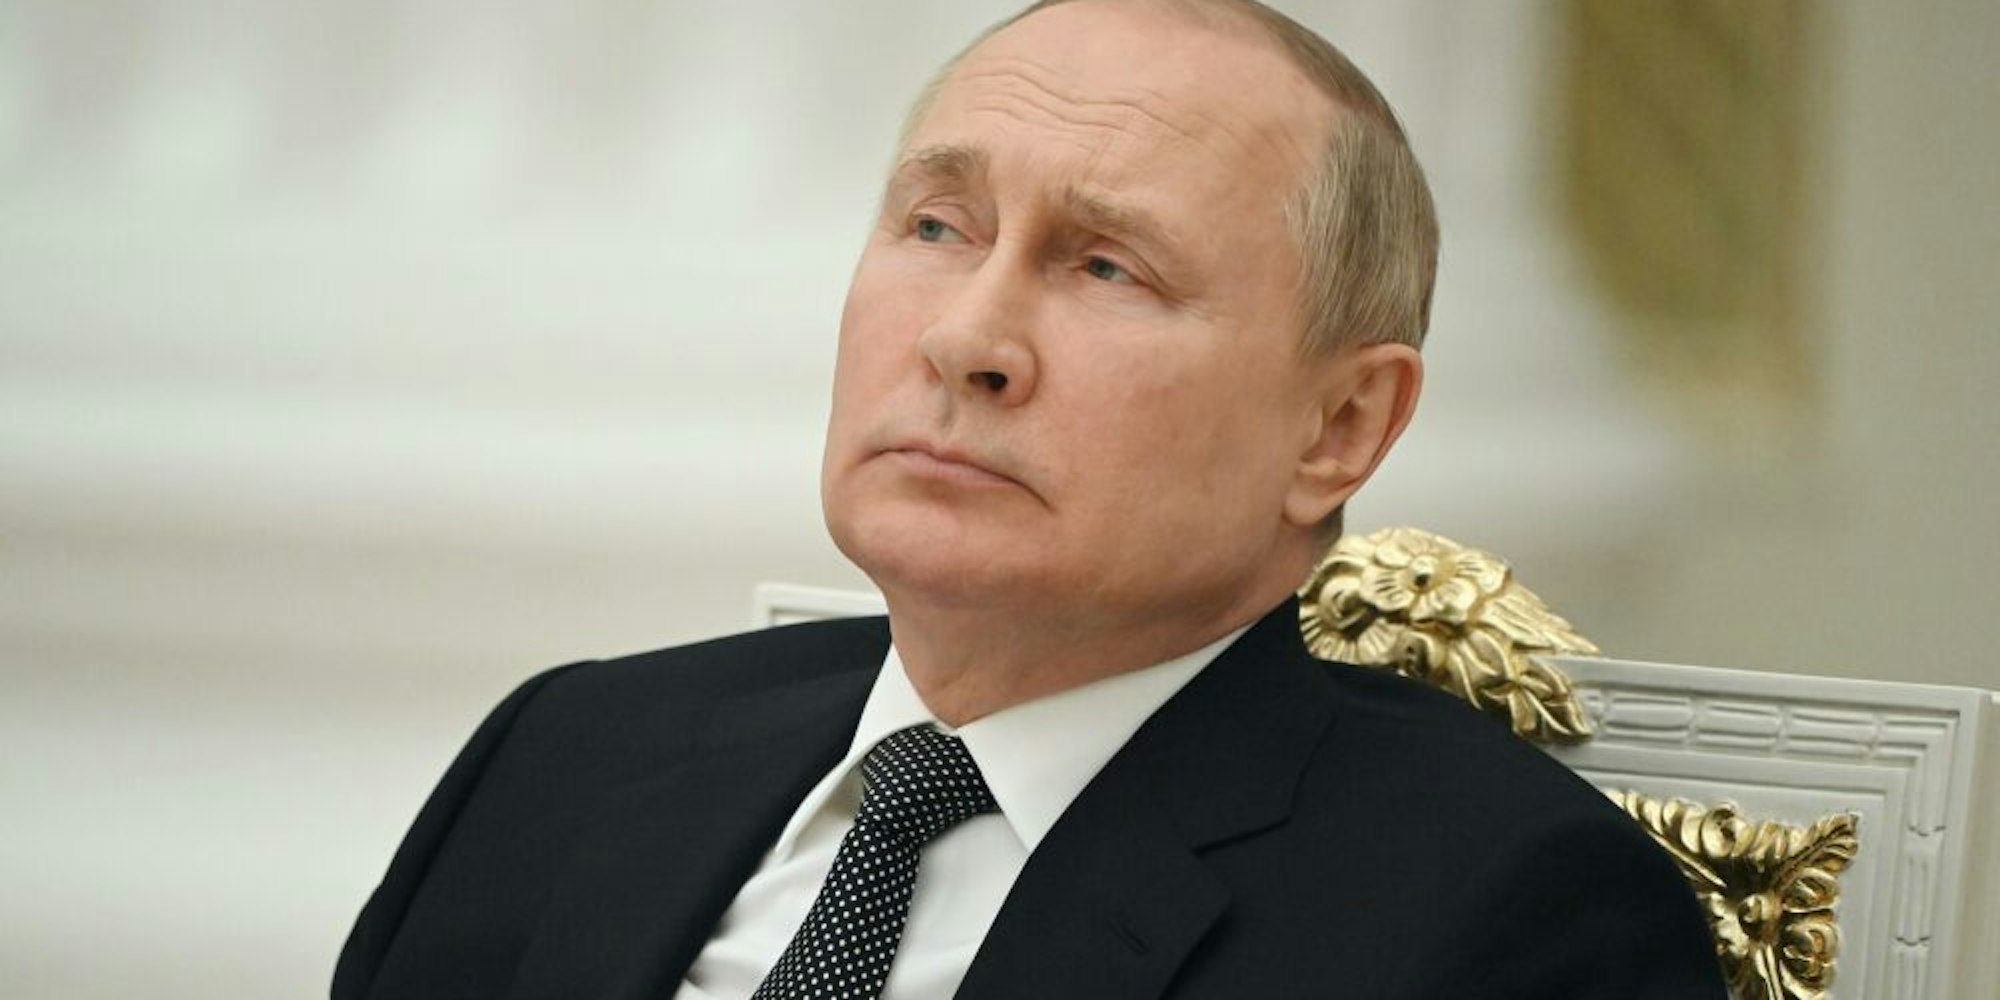 Krank und gebrechlich? Um Russlands Präsidenten Wladimir Putin ranken sich Gerüchte.